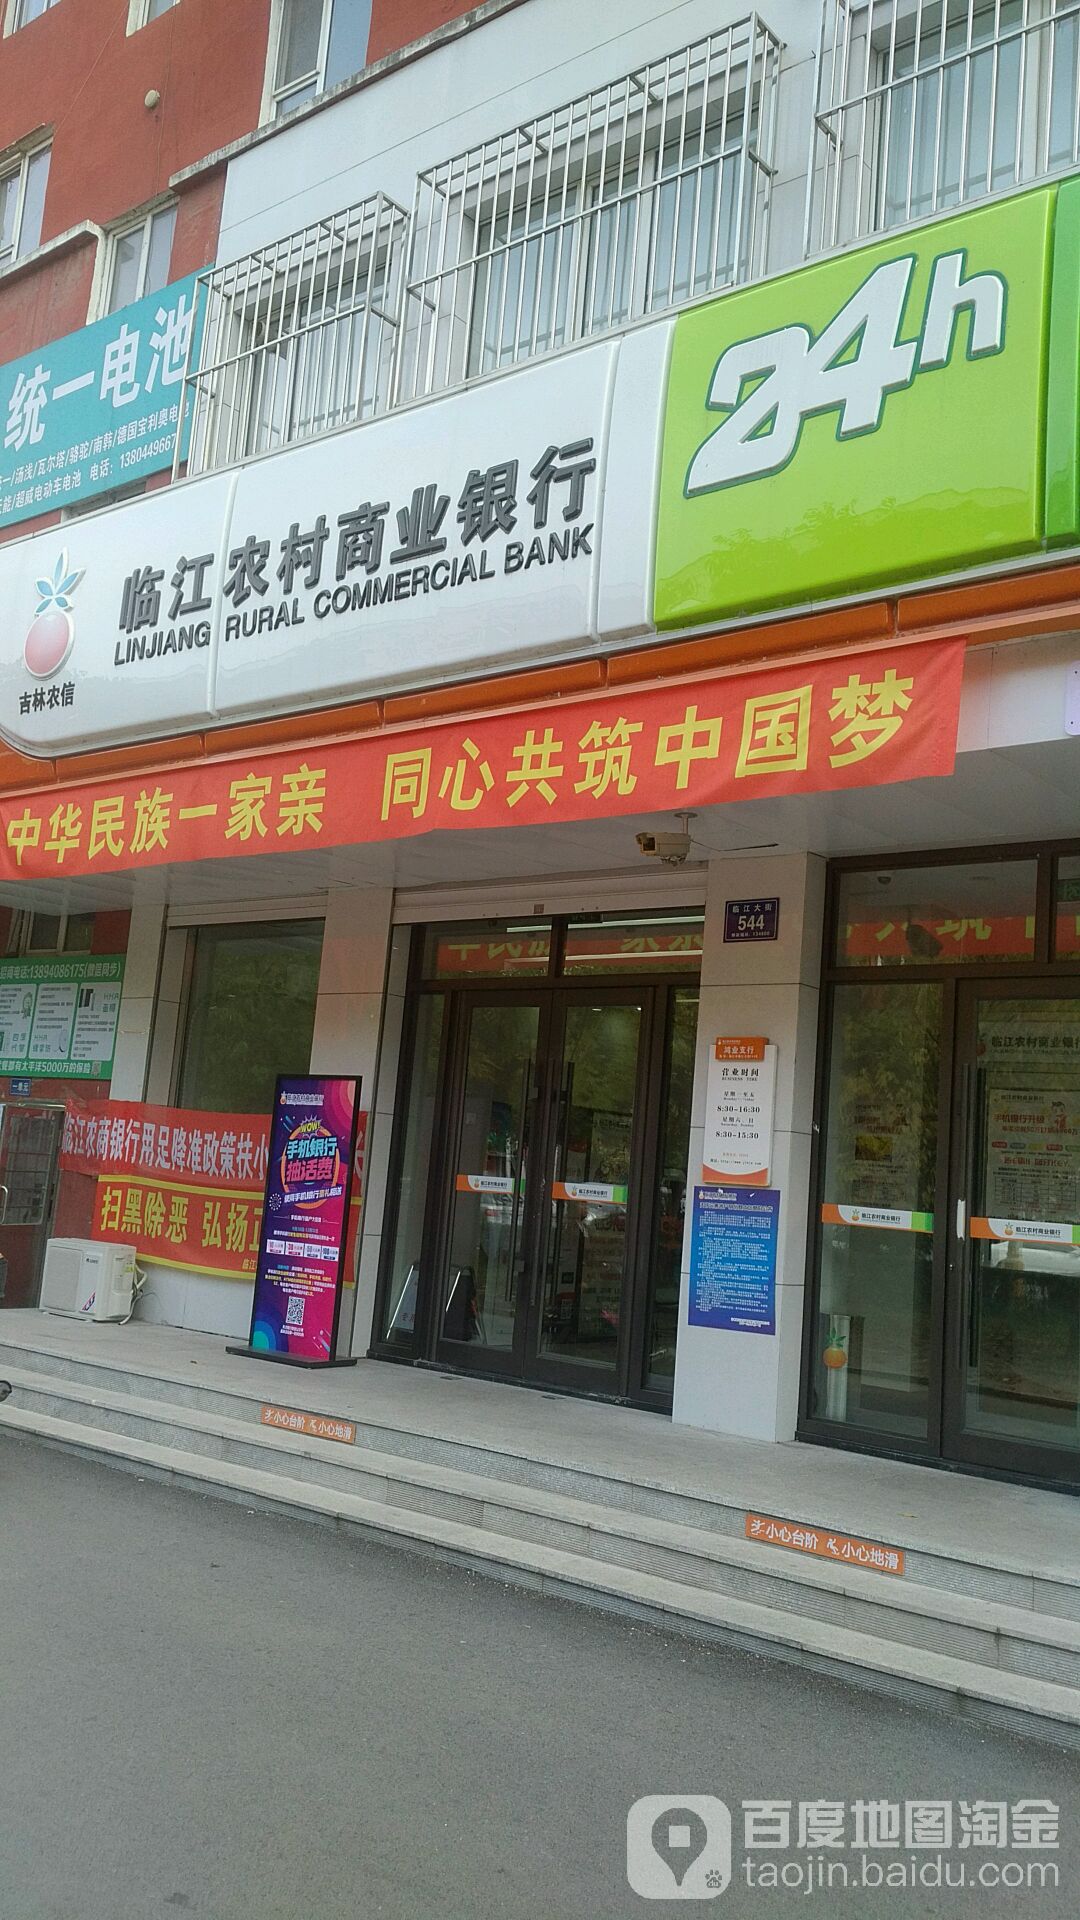 臨江農村商業銀行24小時自助銀行(鴻業支行)